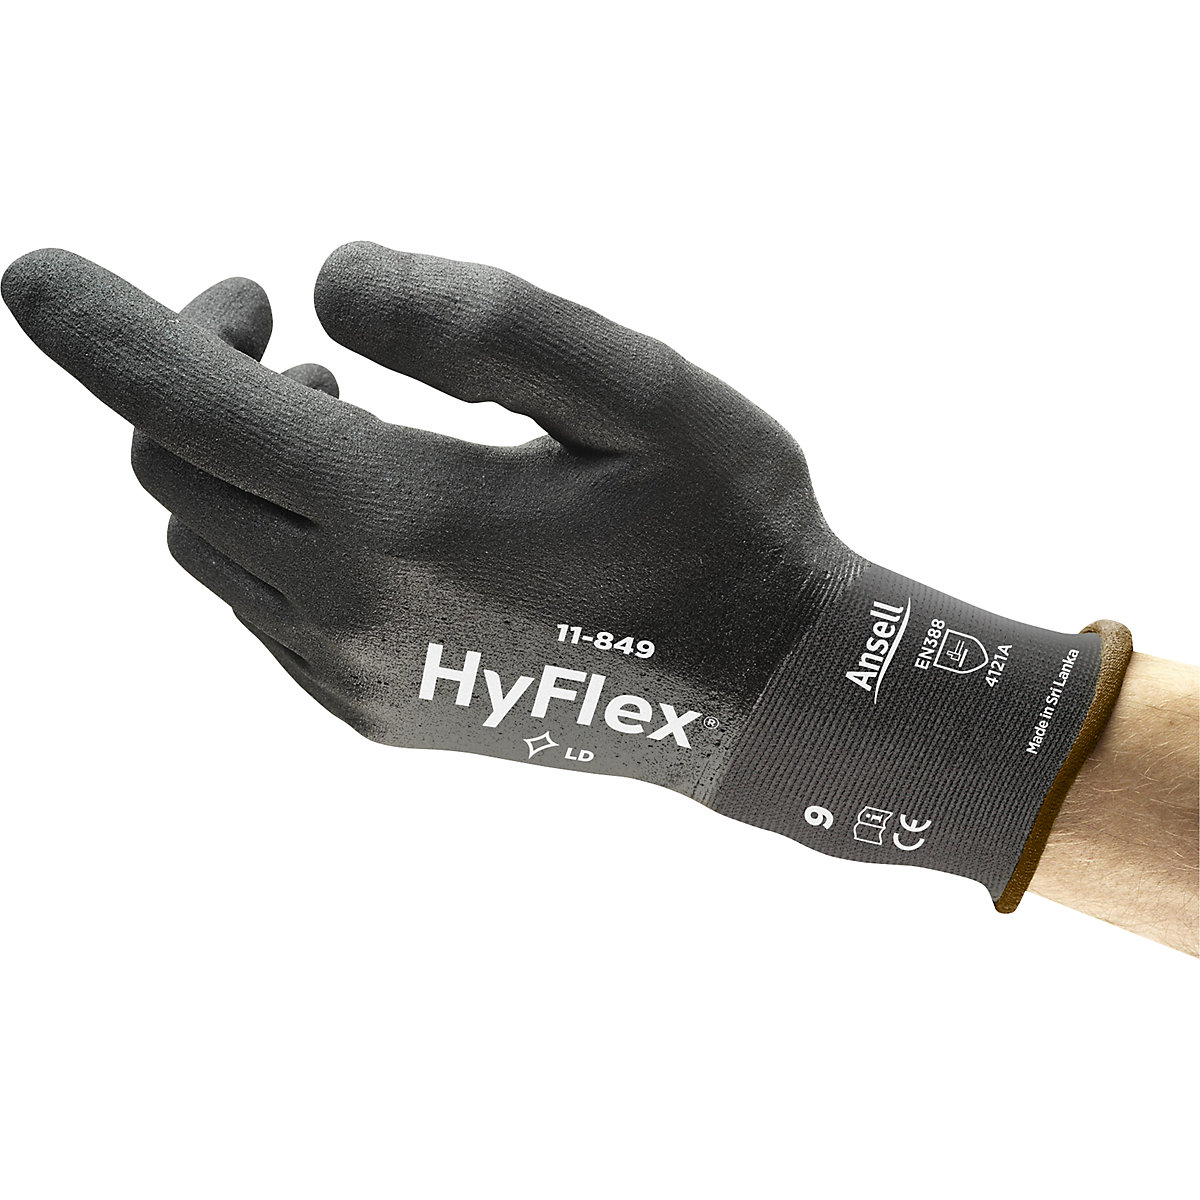 Luva de trabalho HyFlex® 11-849 – Ansell (Imagem do produto 2)-1